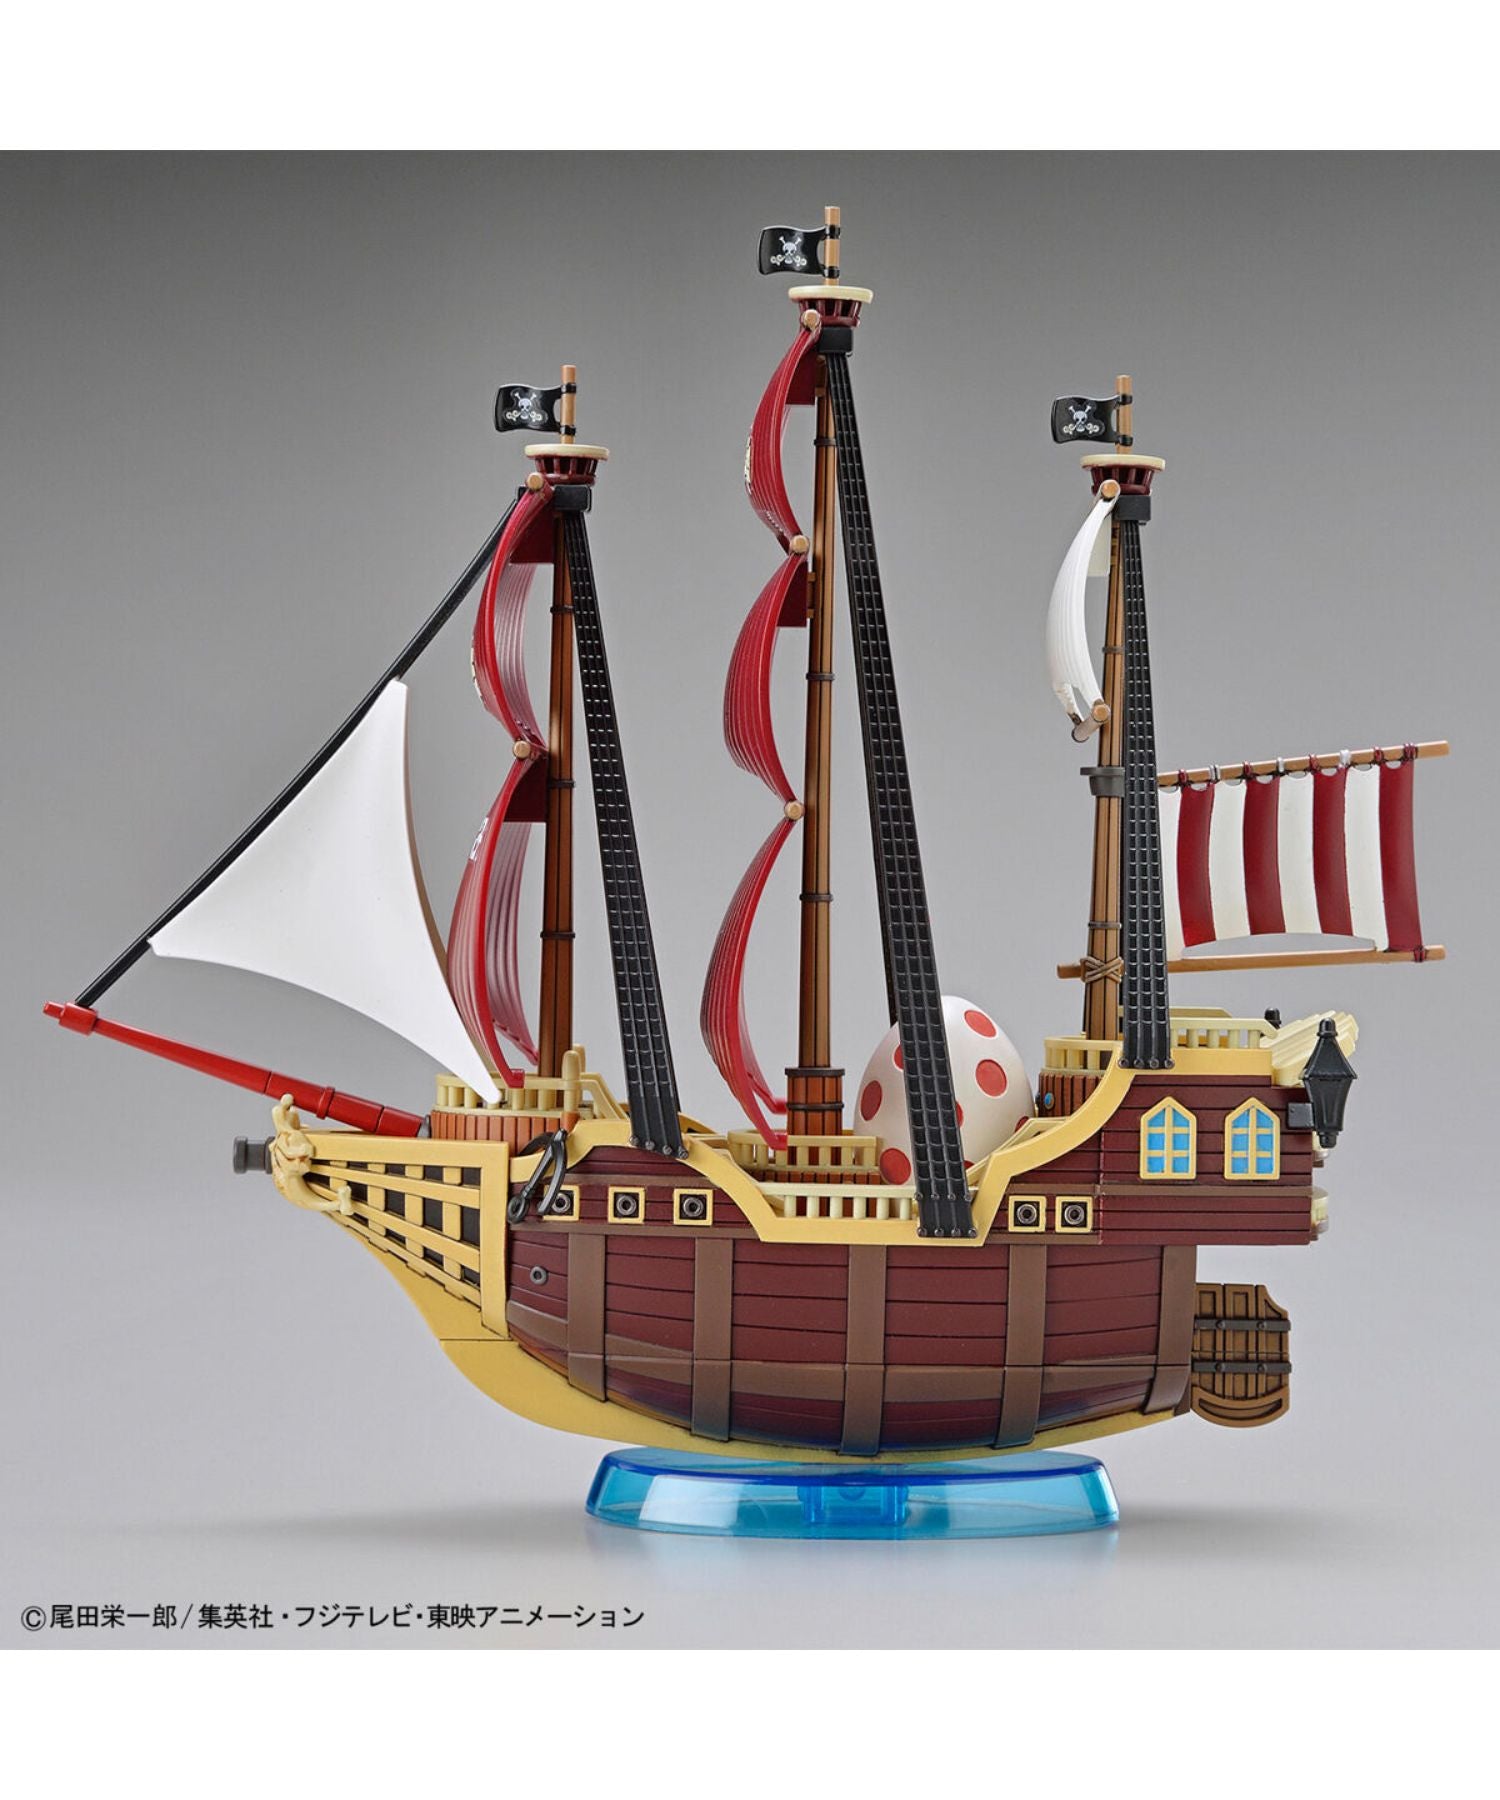 ワンピース偉大なる船(グランドシップ)コレクション オーロ・ジャクソン号